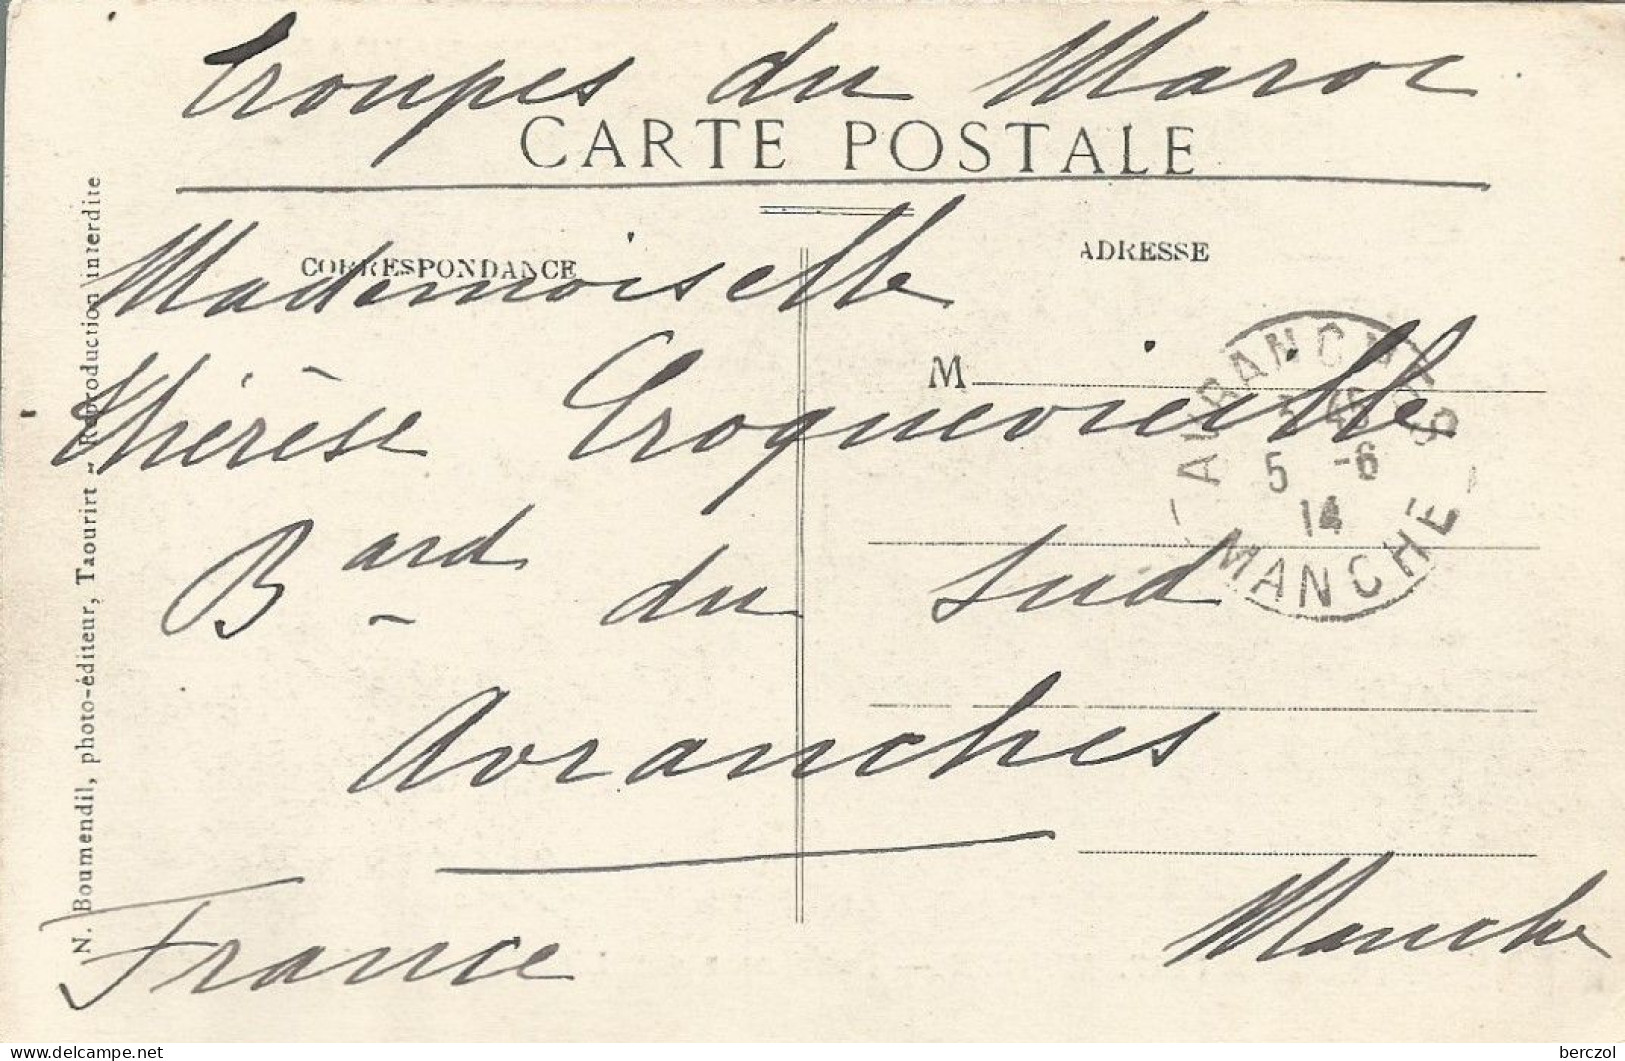 FRANCE ANNEE 1914 CPA INFIRMERIE ANBULANCE DE KASBAT M'COUN 5/6/14 FRANCHISE MILITAIRE TB - Croix Rouge